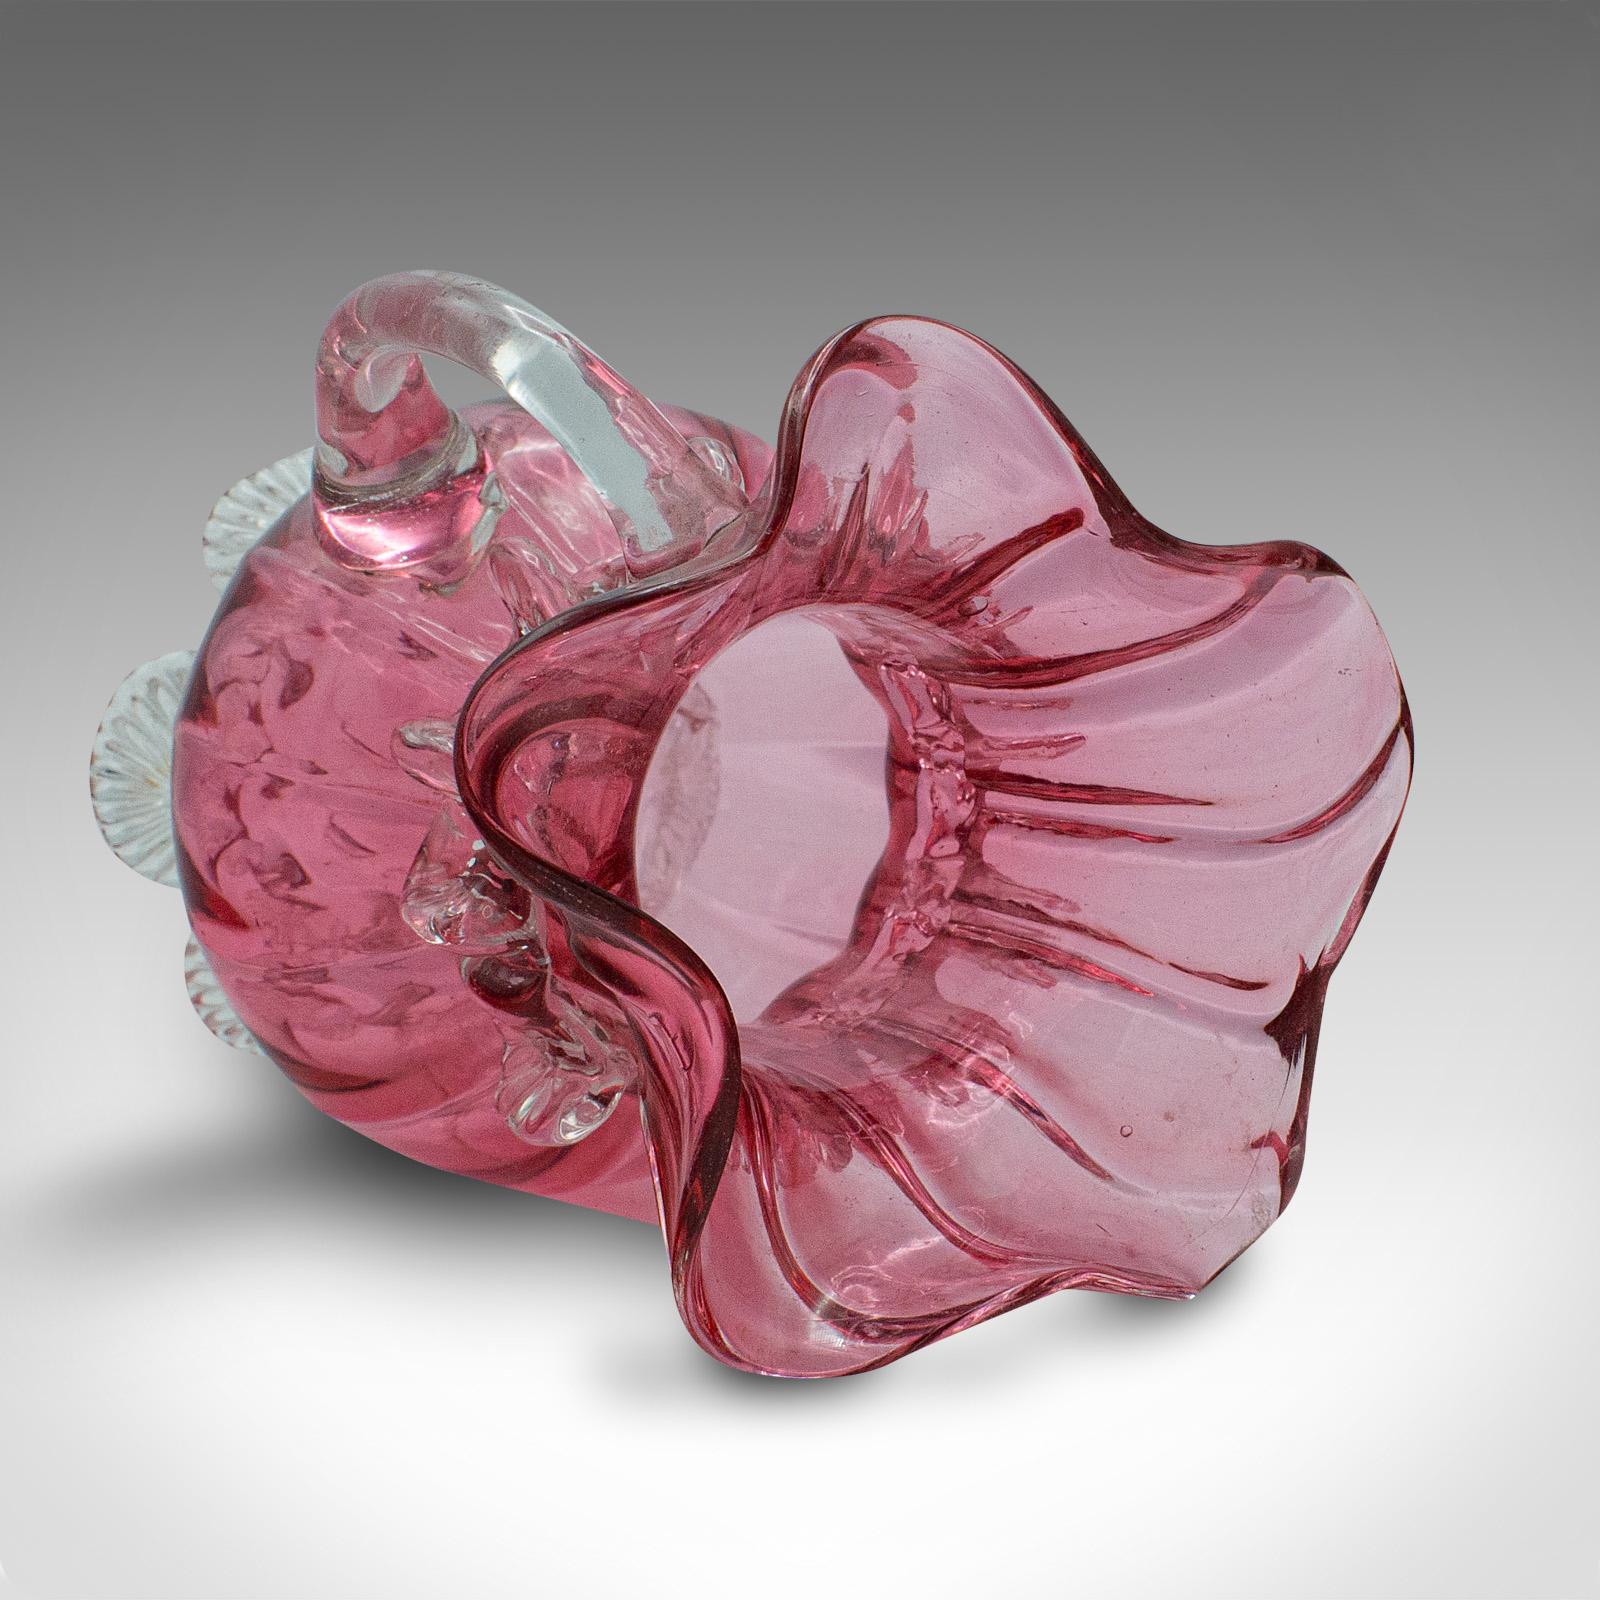 Vintage Cranberry Glass Stem Vase Set, English, Decorative, Flower Slip, Jug For Sale 4